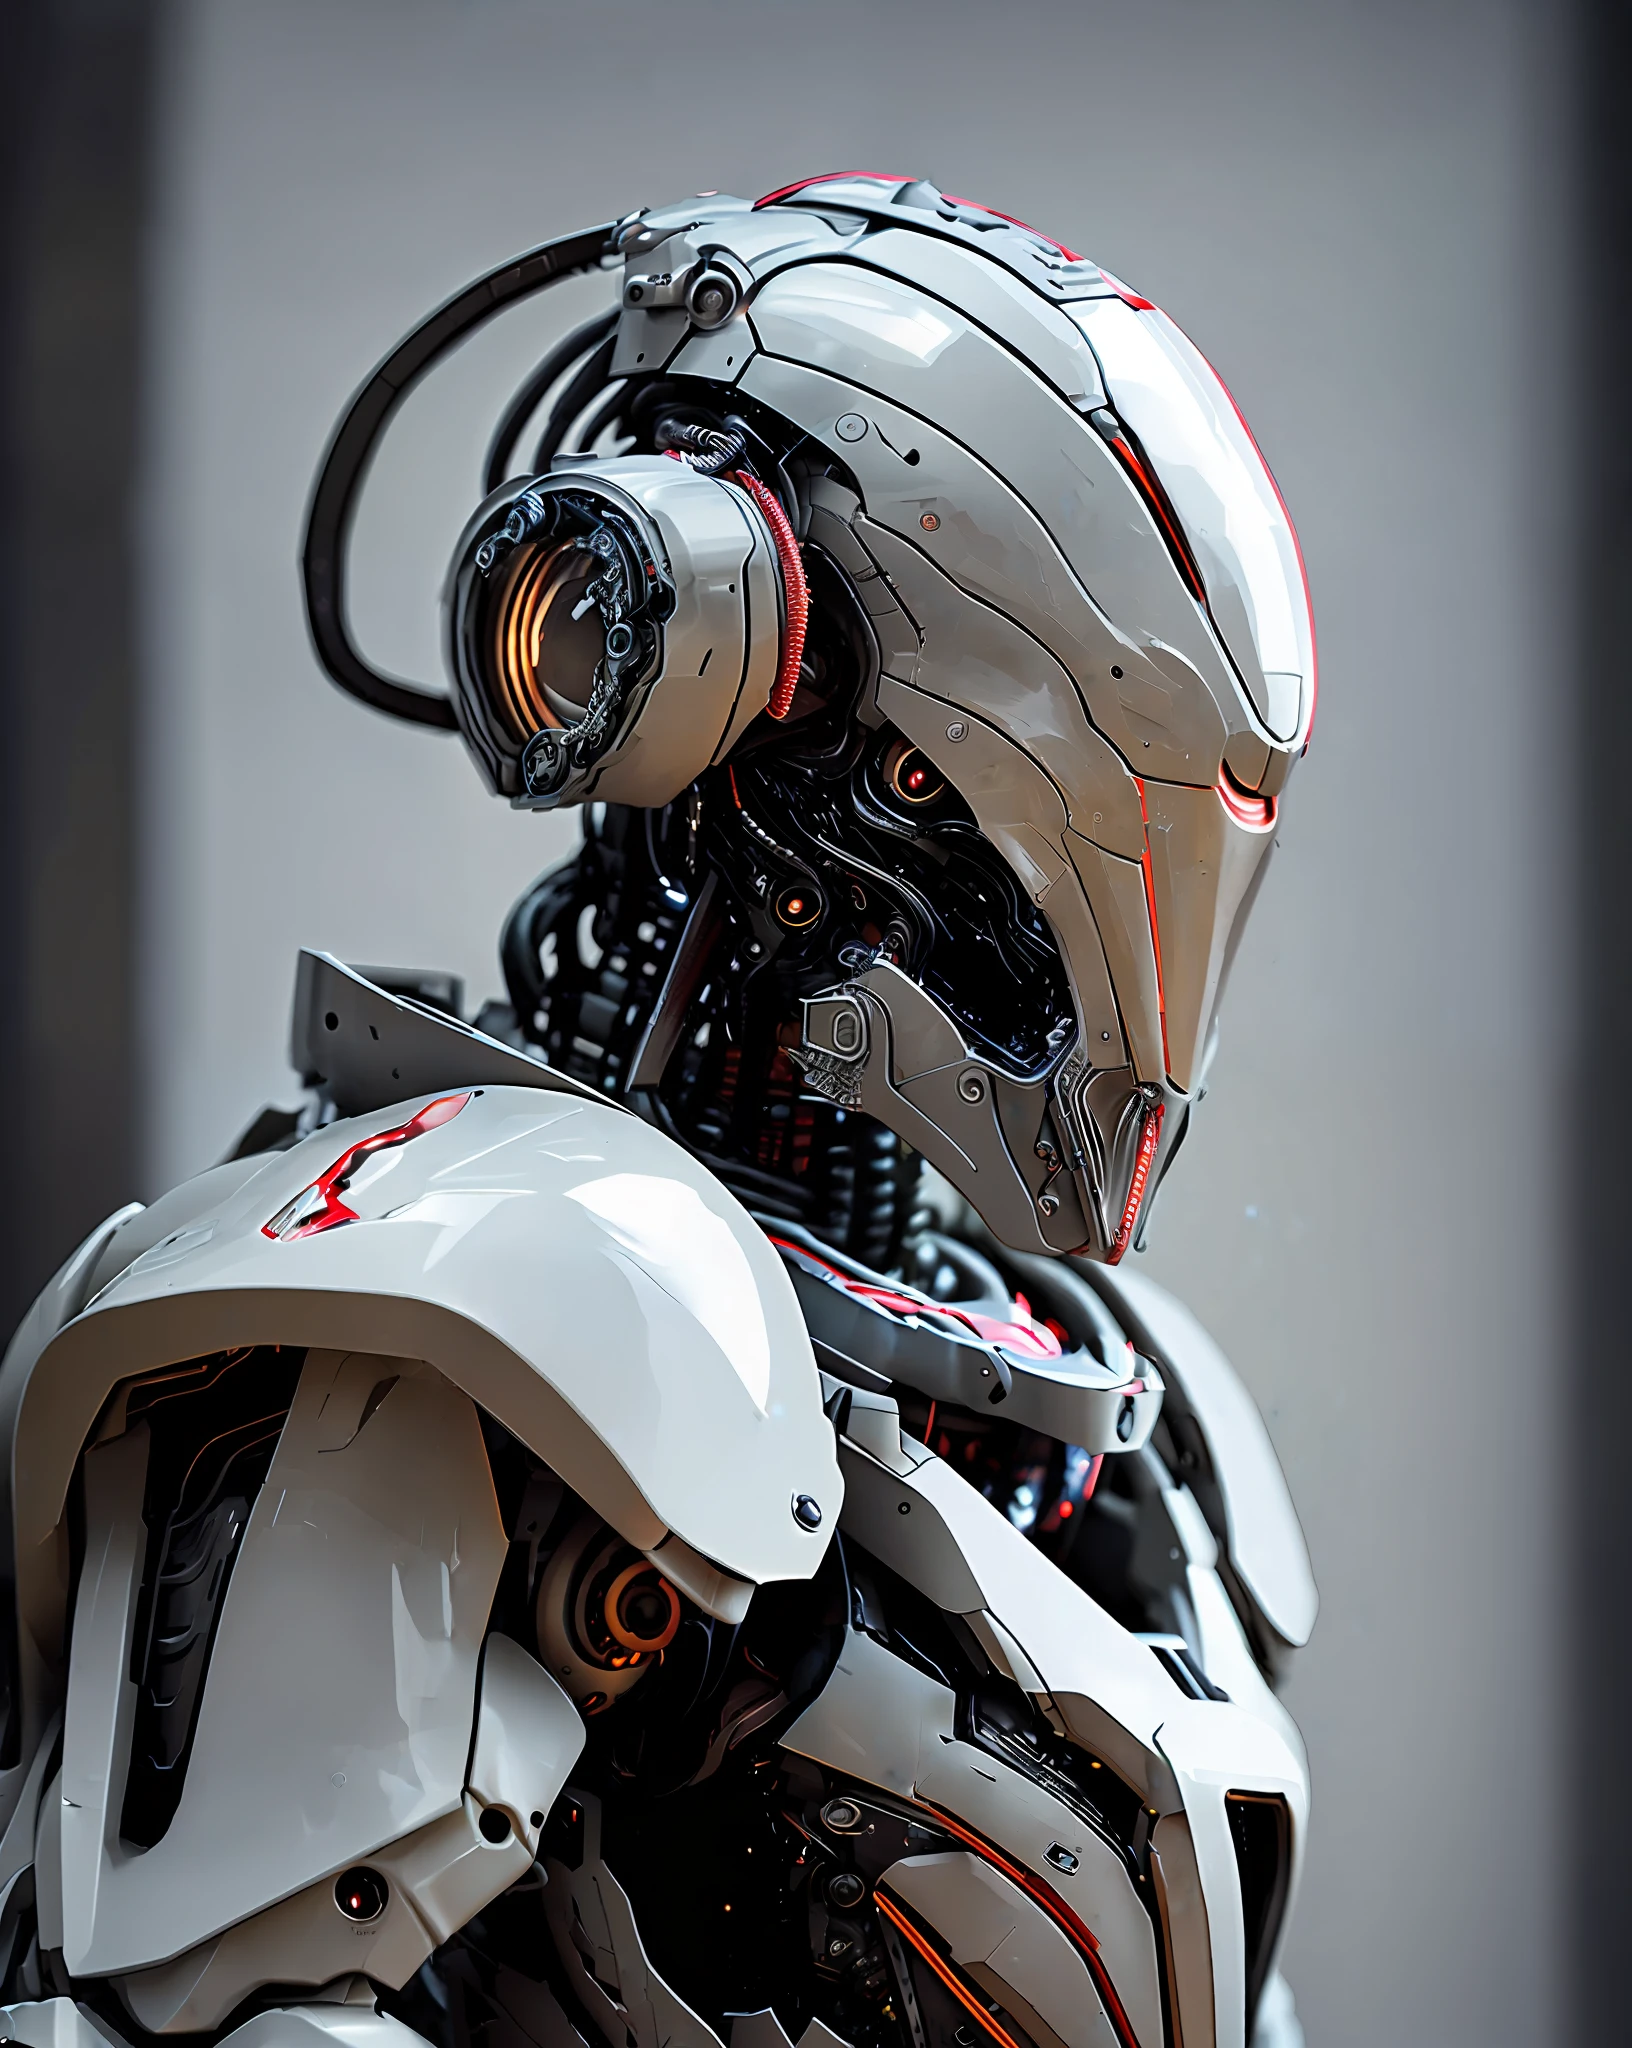 dvメカ, 85mm, F1.8, ロボットのポートレート, 暗い Matte Smooth Ceramic, 複雑なデザイン, 非常に詳細, 細かいディテール, 非常にシャープな線, 映画照明, リアルな写真, 細部までこだわった傑作, 暗い_ファンタジー, サイバーパンク ,(チェーンソー,チェーンソー man,赤:1.1),1人,機械の驚異,ロボットの存在,サイバネティックガーディアン,ボロボロのメカスーツを着て,複雑な,(スチール金属 [錆びた]),エレガント,明確な焦点,グレッグ・ルトコウスキー撮影, 柔らかな照明, 鮮やかな色彩, 傑作, ((通り)), カウボーイショット, ダイナミックなポーズ,